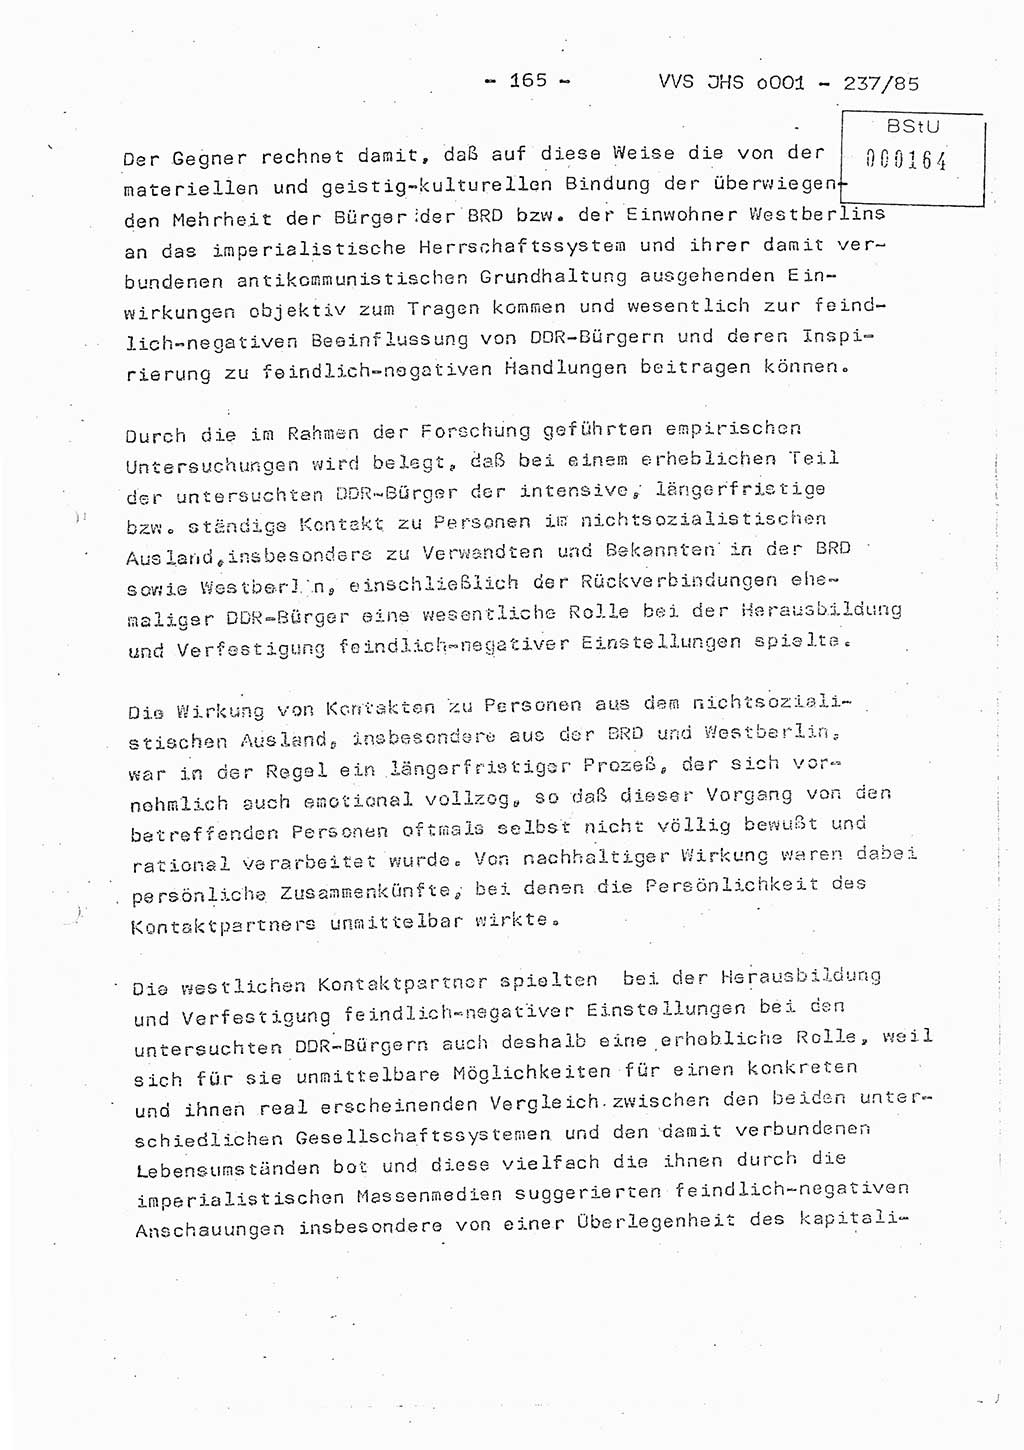 Dissertation Oberstleutnant Peter Jakulski (JHS), Oberstleutnat Christian Rudolph (HA Ⅸ), Major Horst Böttger (ZMD), Major Wolfgang Grüneberg (JHS), Major Albert Meutsch (JHS), Ministerium für Staatssicherheit (MfS) [Deutsche Demokratische Republik (DDR)], Juristische Hochschule (JHS), Vertrauliche Verschlußsache (VVS) o001-237/85, Potsdam 1985, Seite 165 (Diss. MfS DDR JHS VVS o001-237/85 1985, S. 165)